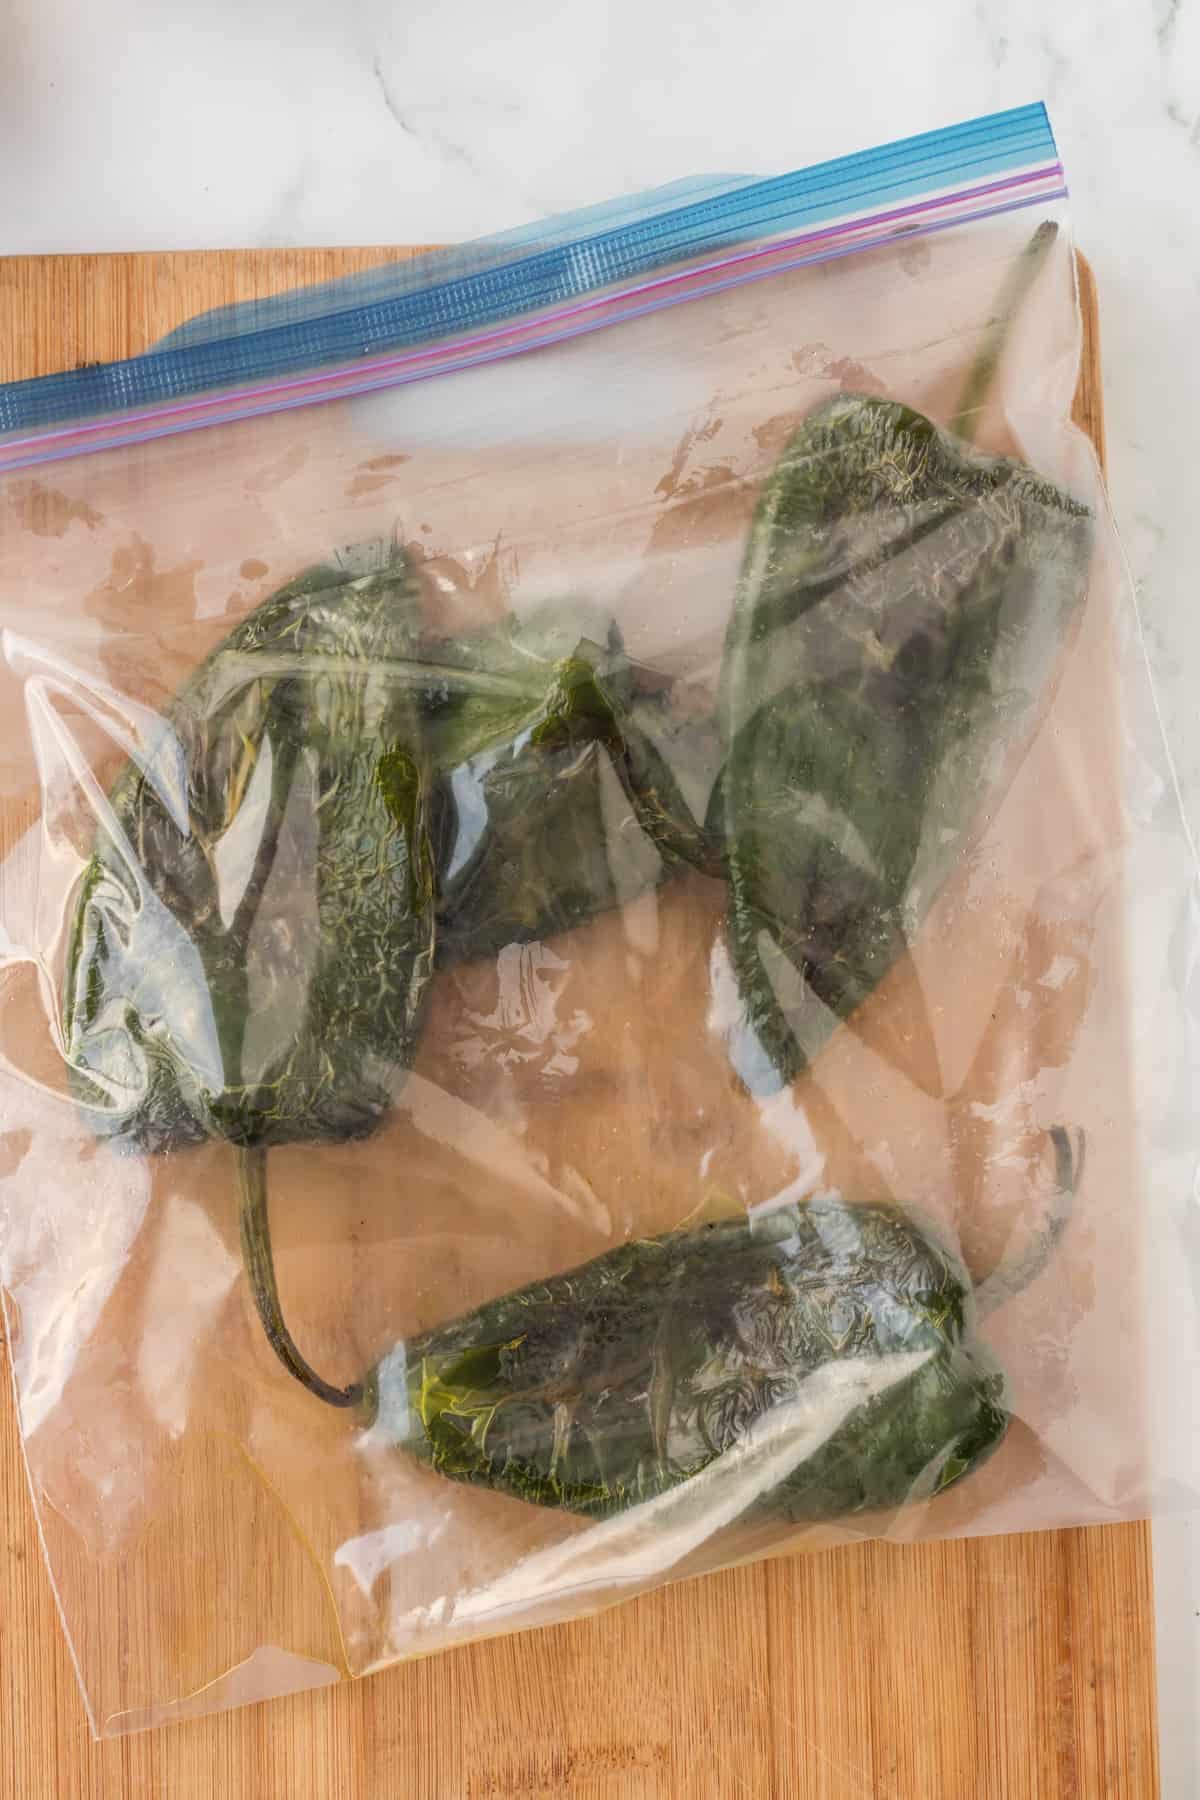 poblano pepper in a plastic bag.